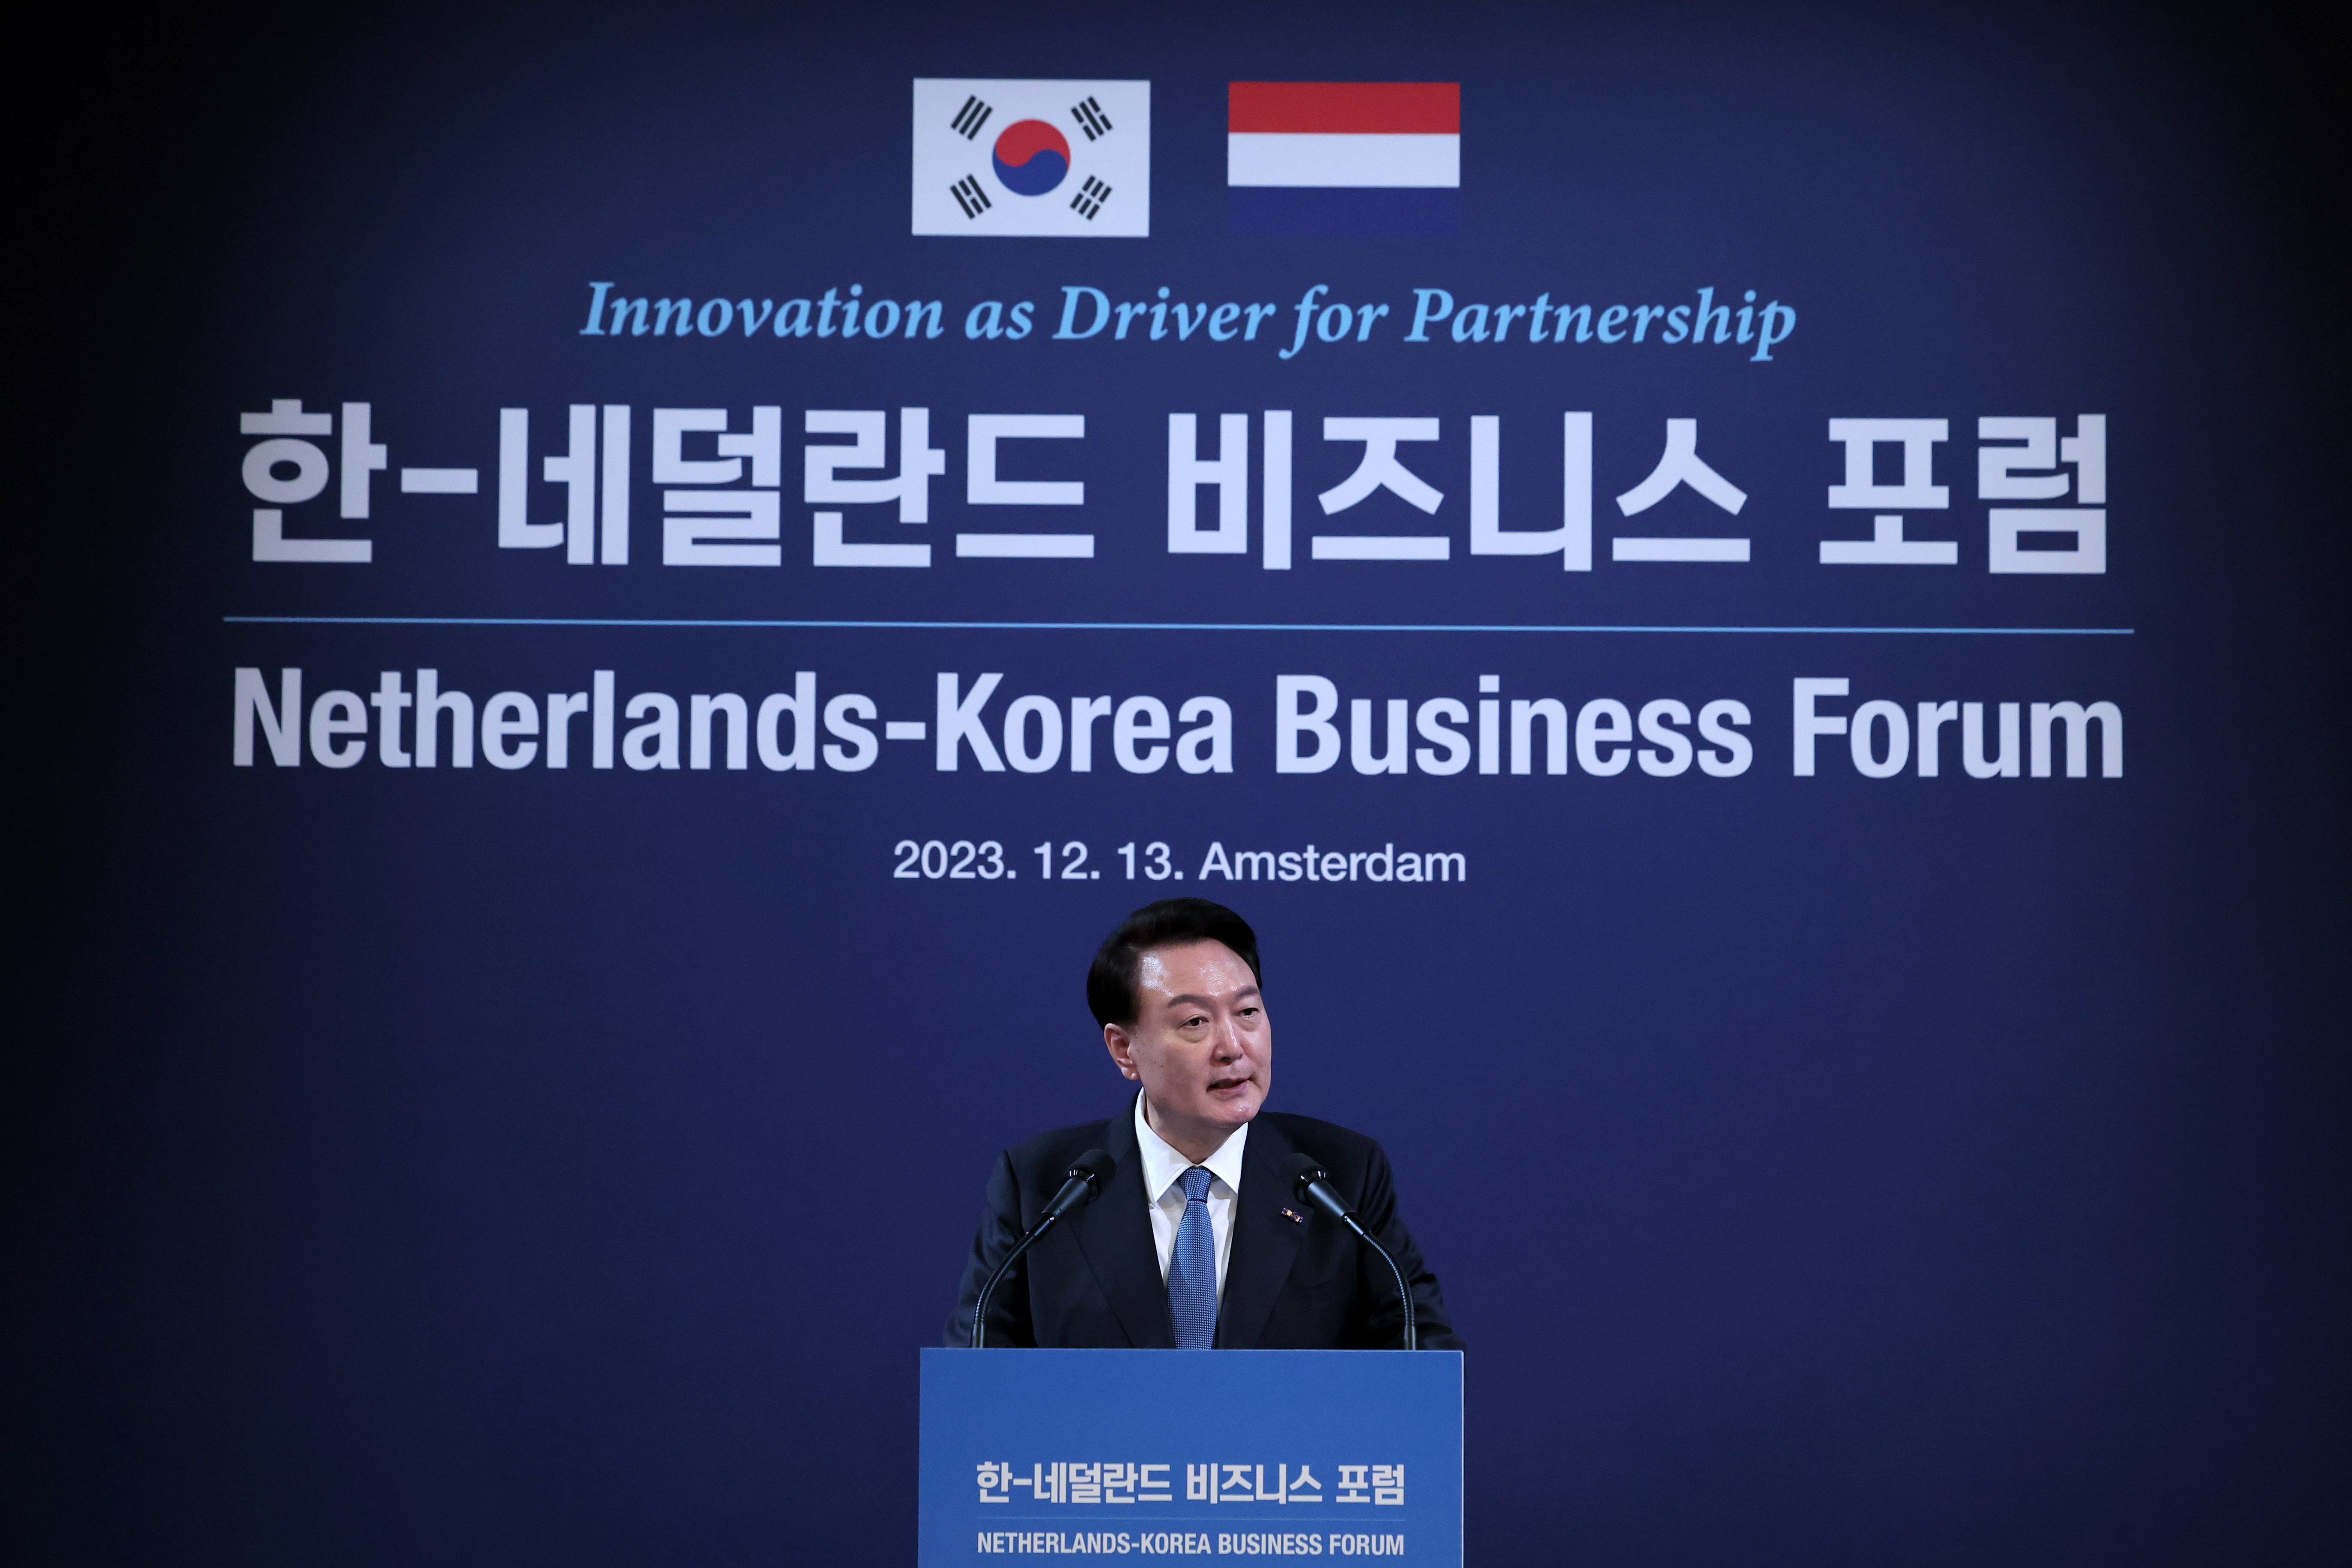 "한국과 네덜란드는 보편적 가치를 토대로 성장한 국가...정부는 언제나 기업들의 든든한 조력자가 될 것"